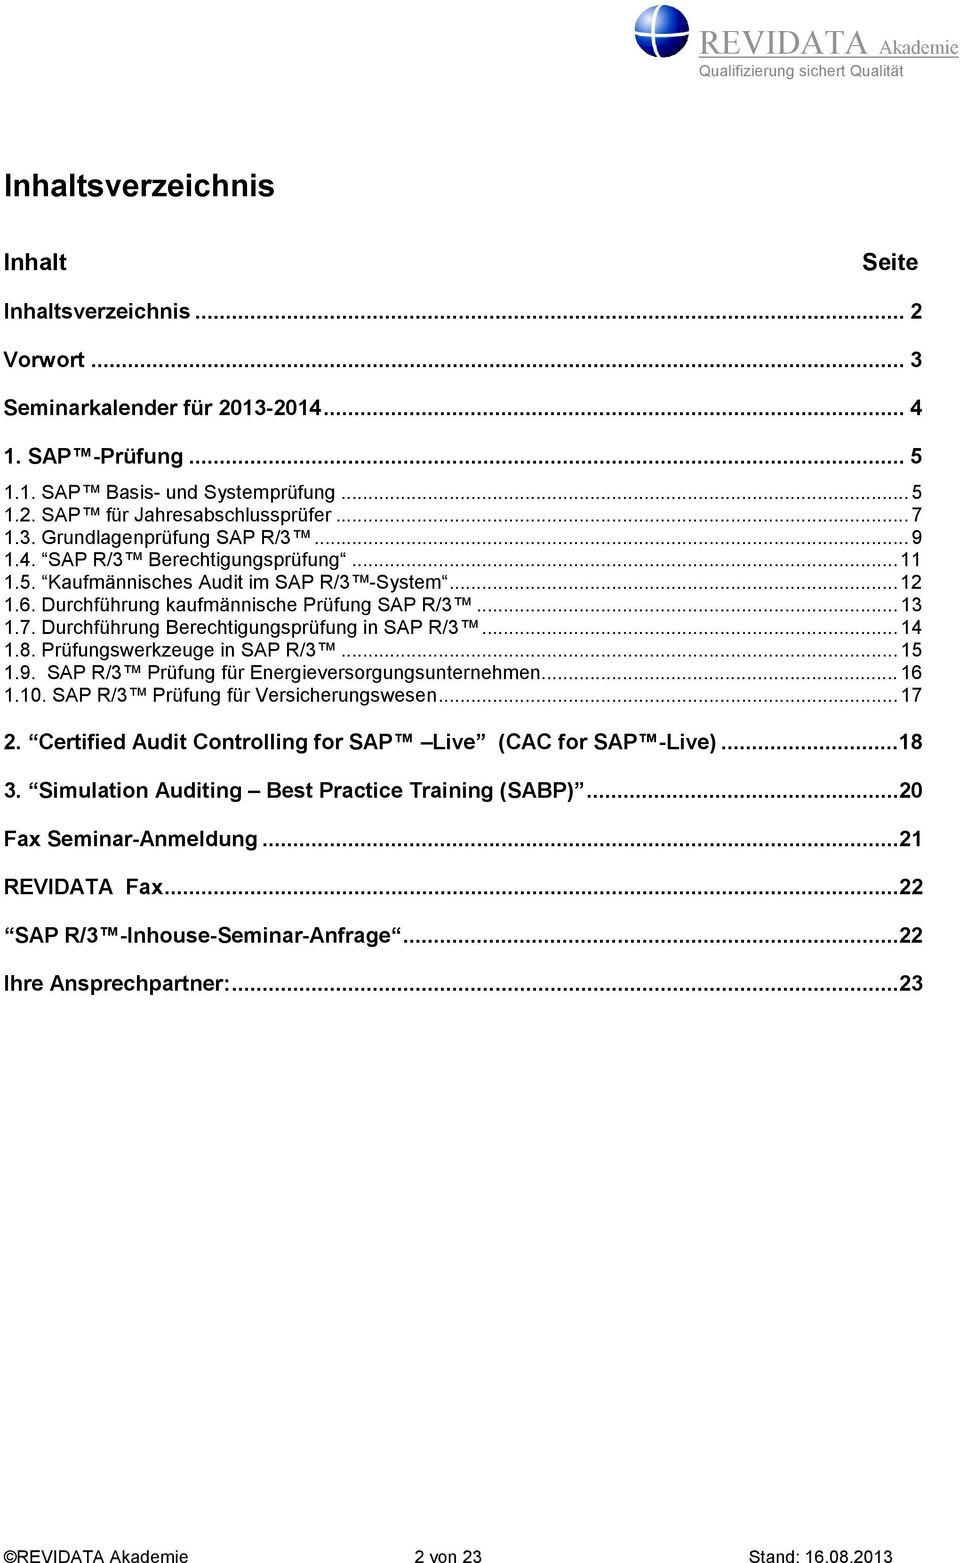 .. 14 1.8. Prüfungswerkzeuge in SAP R/3... 15 1.9. SAP R/3 Prüfung für Energieversorgungsunternehmen... 16 1.10. SAP R/3 Prüfung für Versicherungswesen... 17 2.